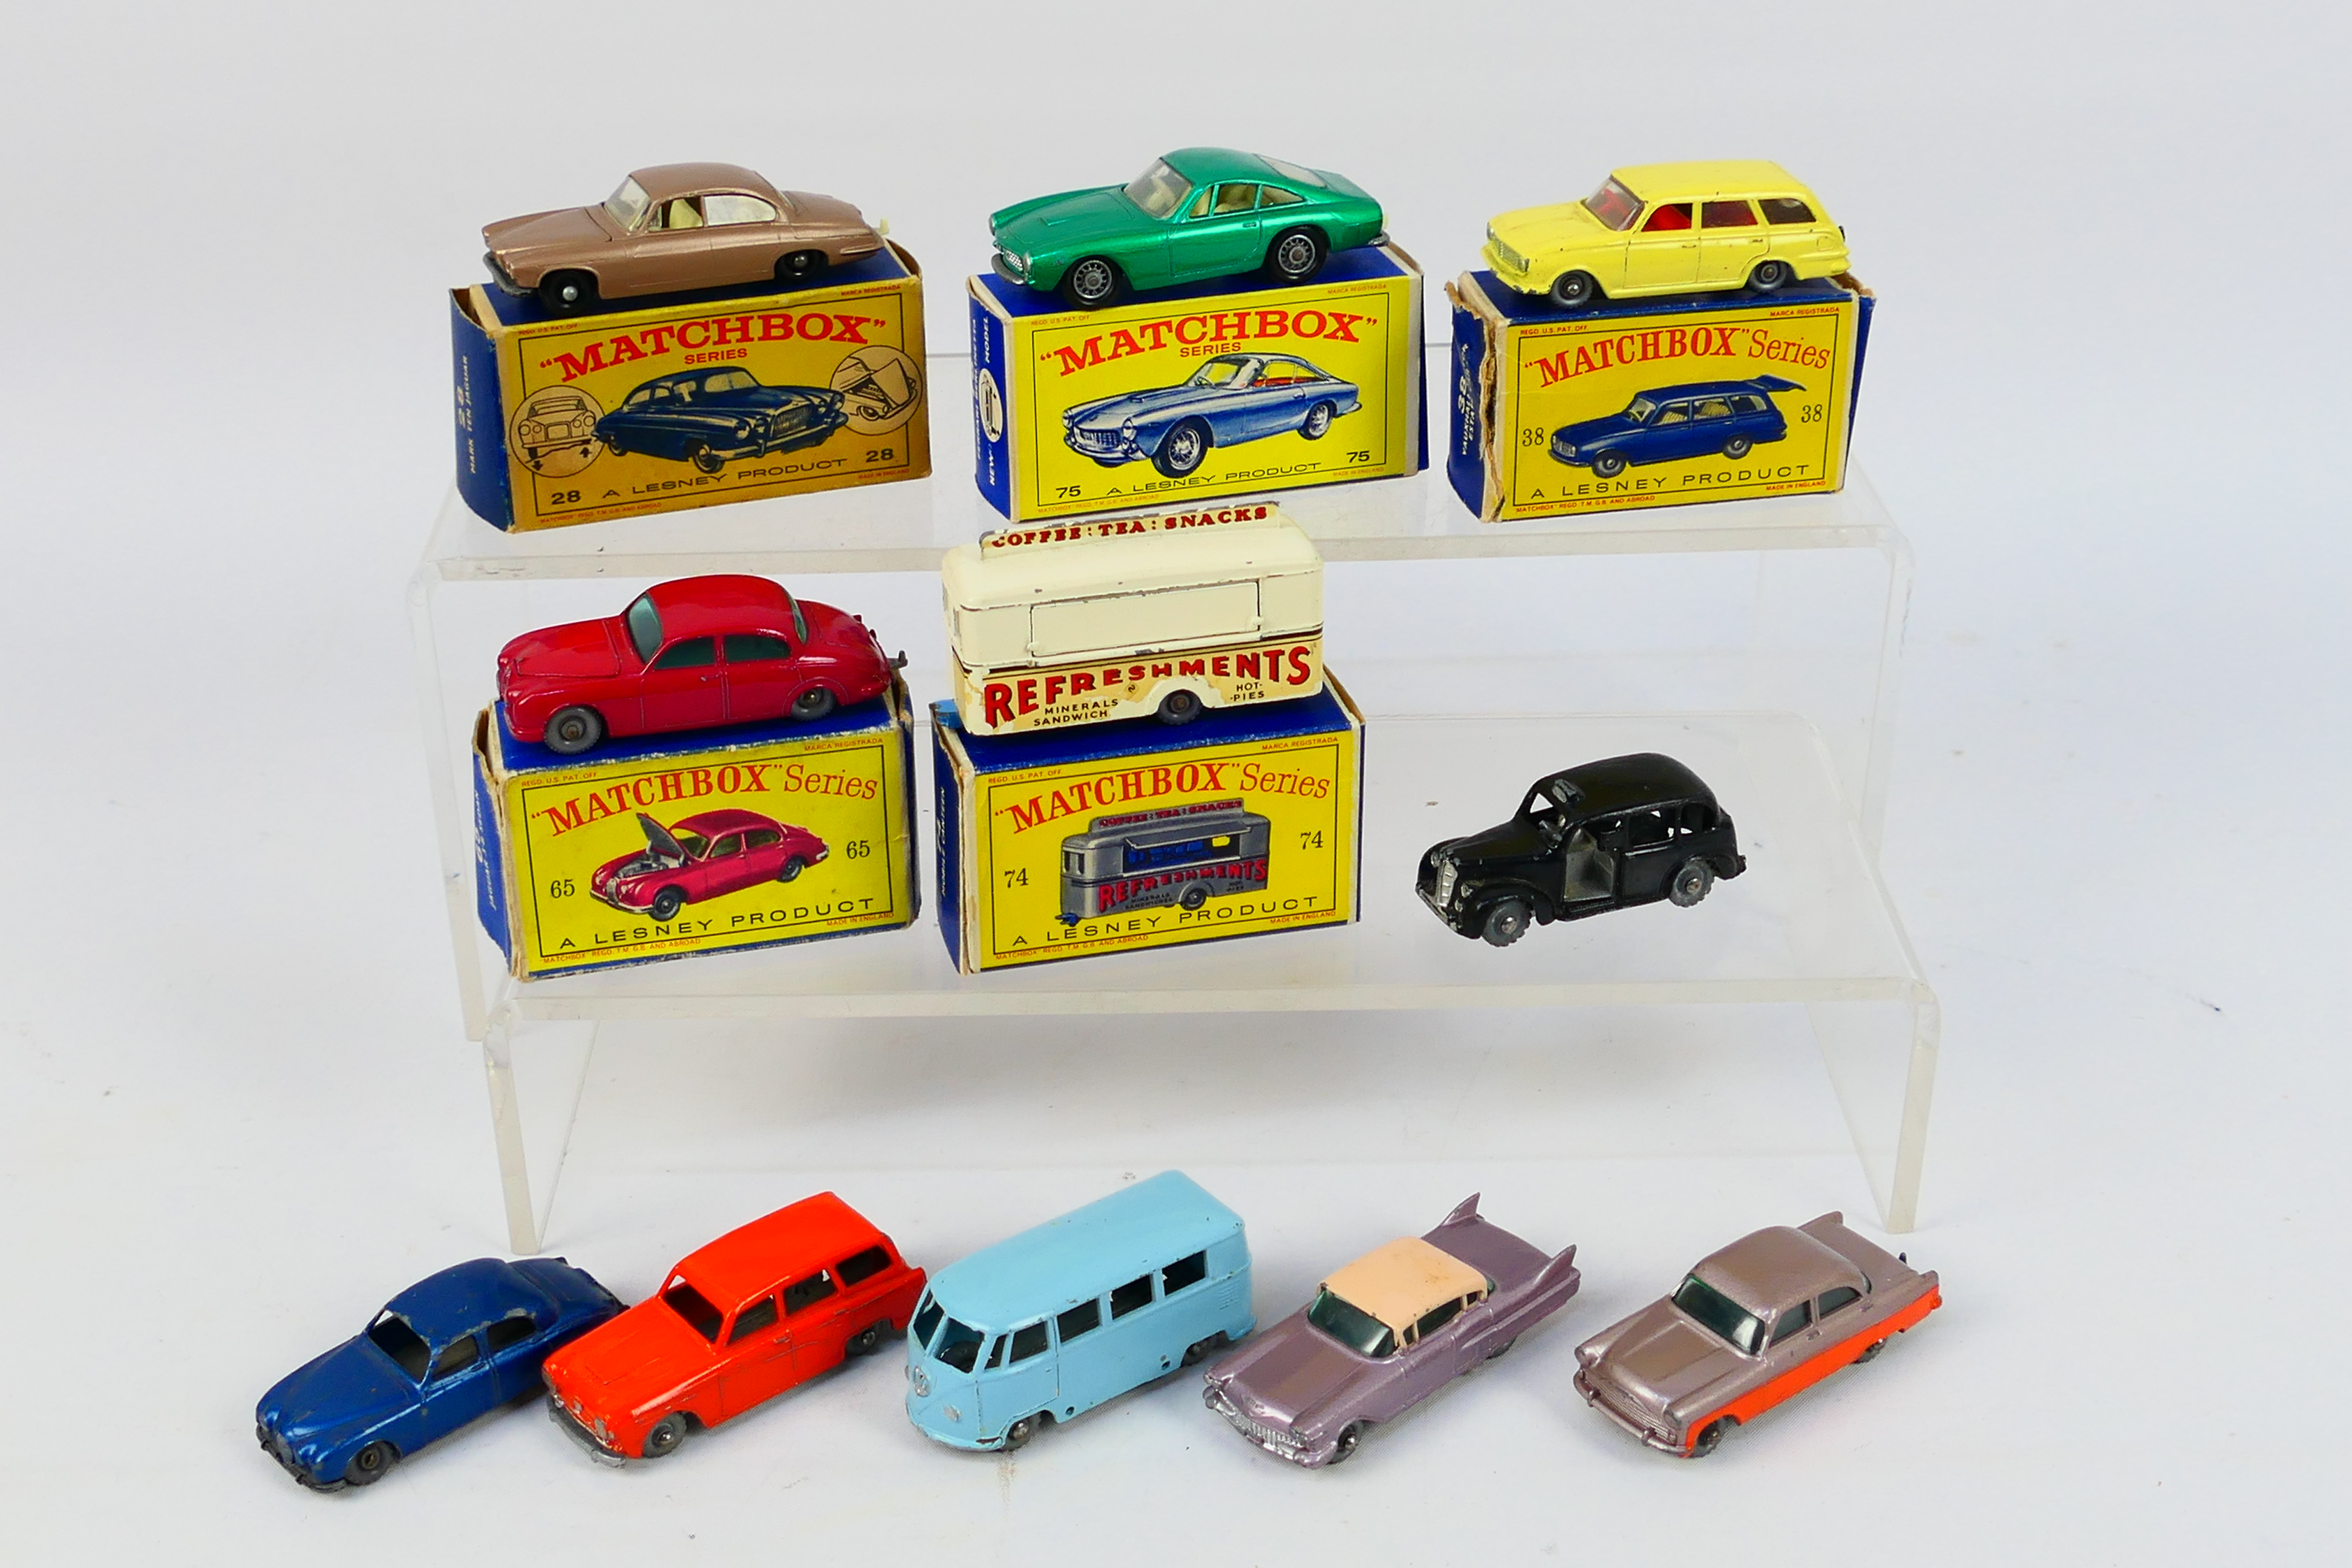 Matchbox - 11 x boxed/unboxed Matchbox die-cast model vehicles - Lot includes a #75 Ferrari